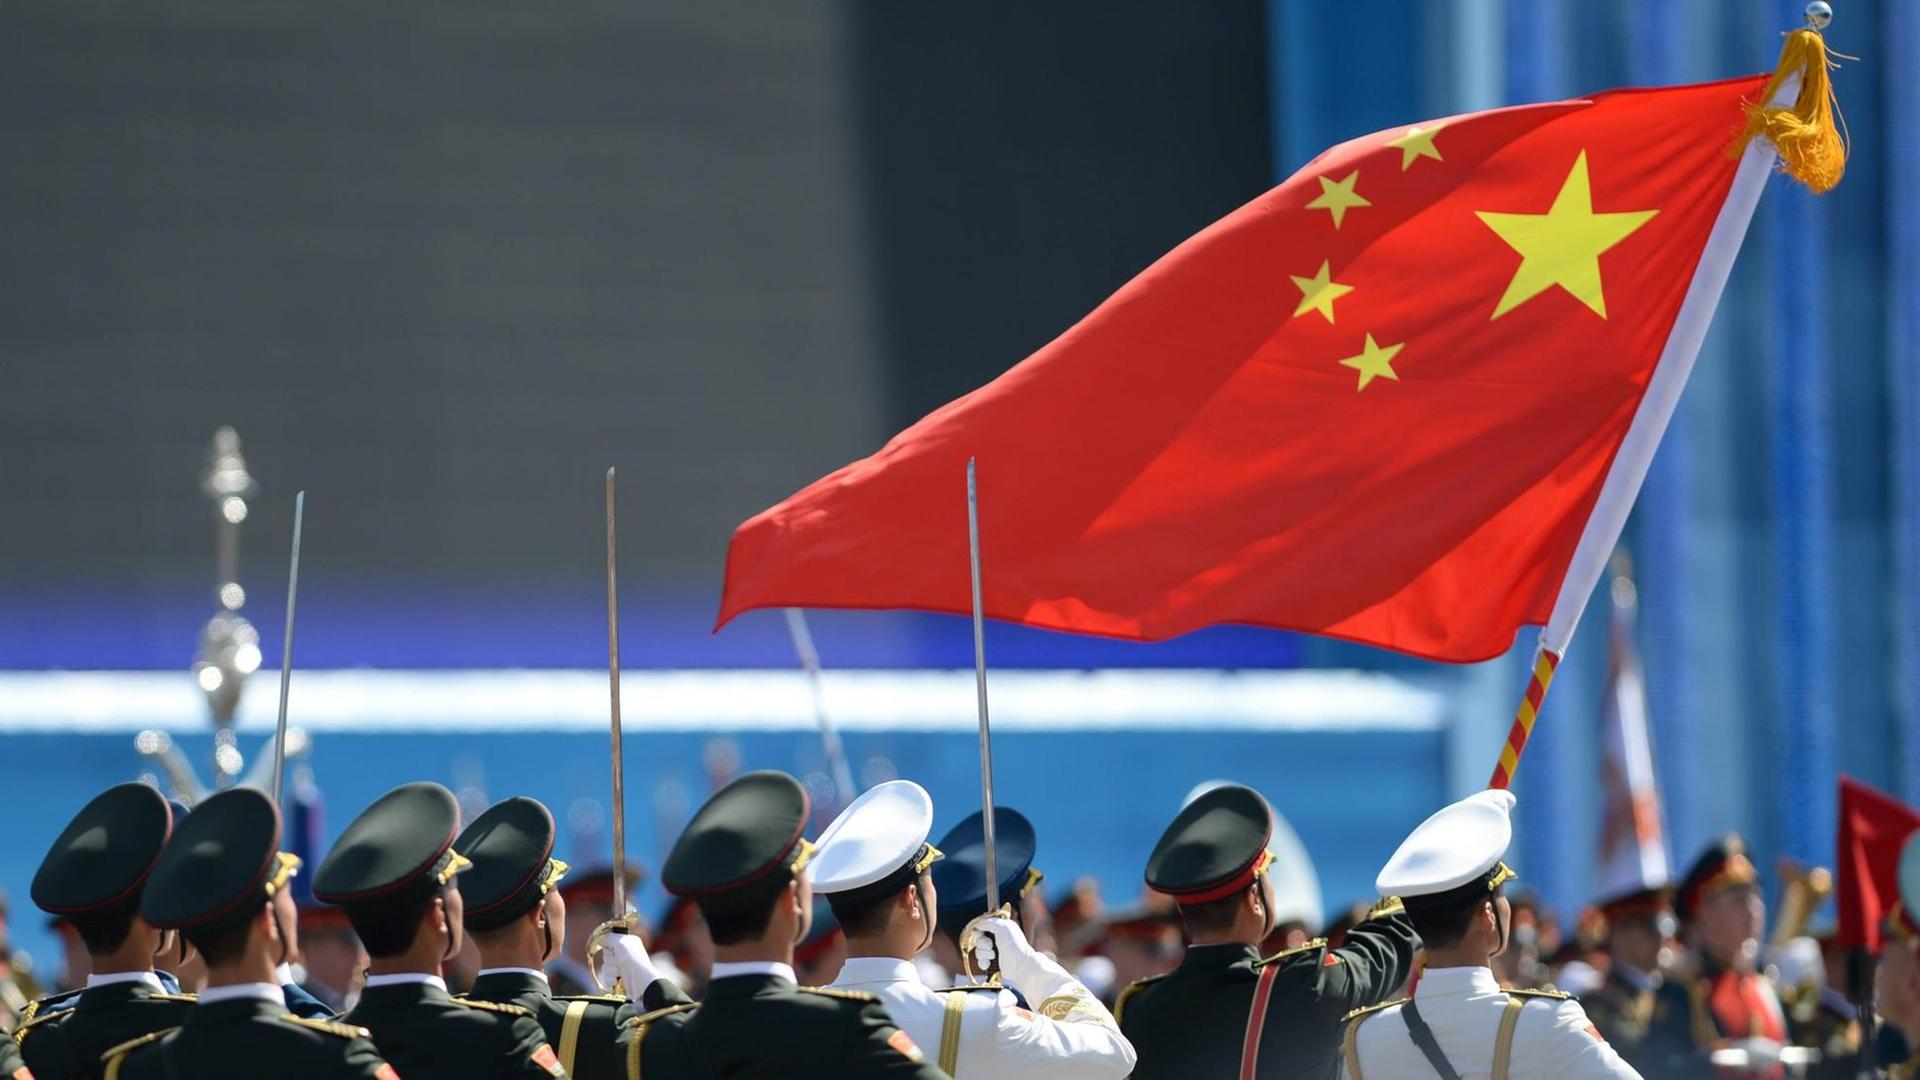 Chinas Selbstbewusstsein ist in den letzten Jahren markant gewachsen, sagt der Politologe Eberhard Sandschneider. Ehrengarde der Chinesischen Befreiungsarmee bei einer Militärparade.